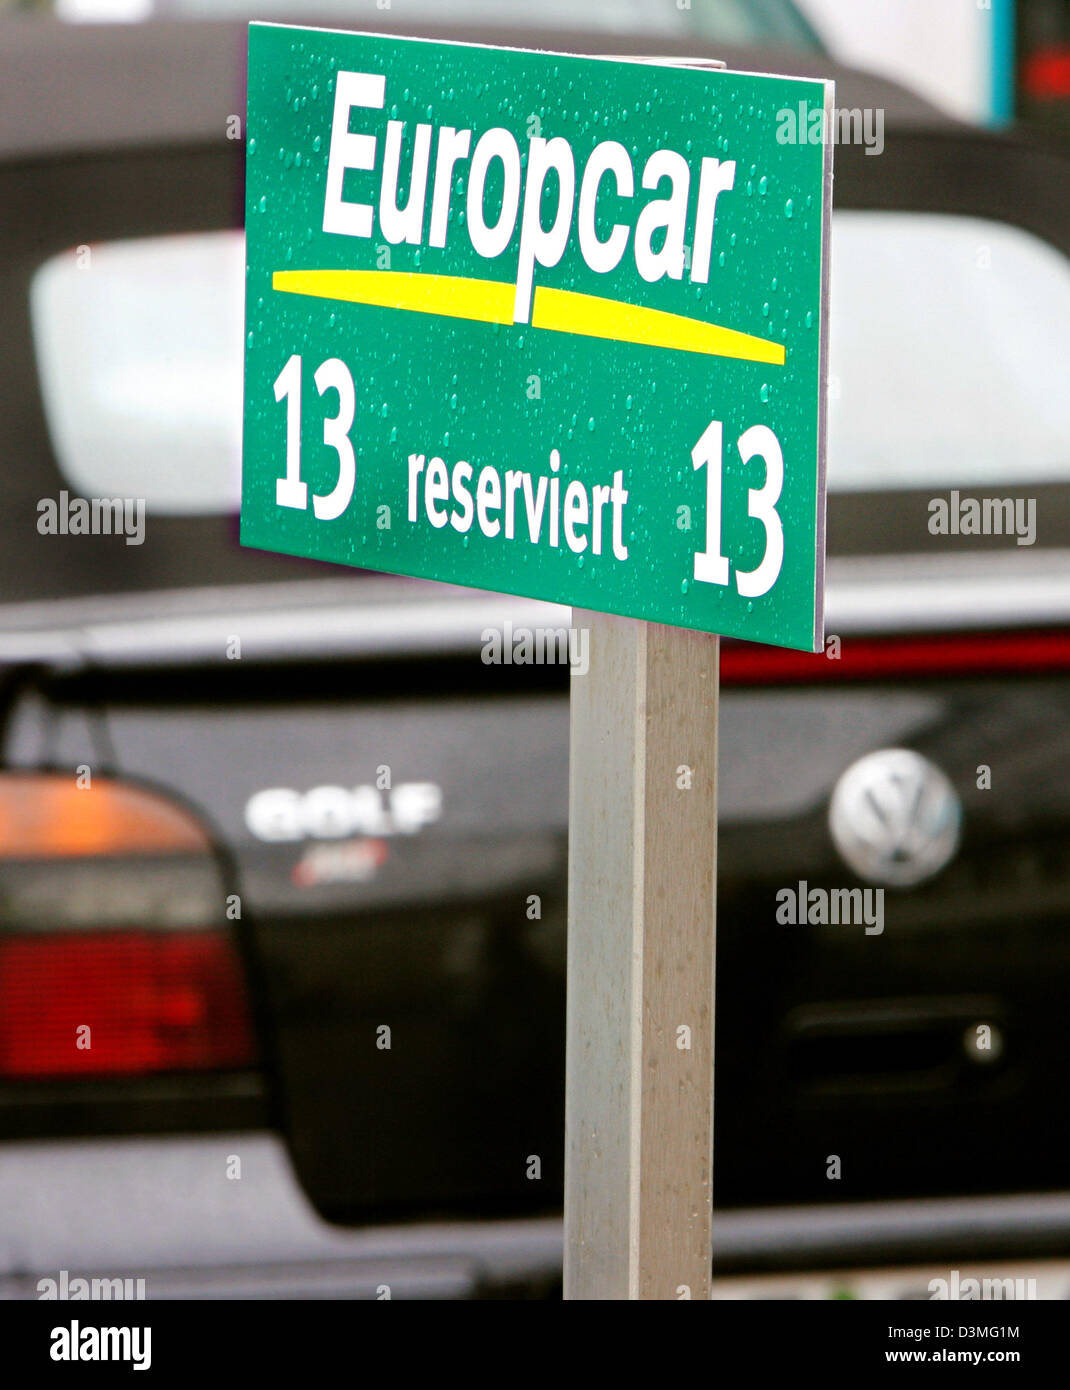 La imagen muestra un parking cartel de la compañía de alquiler de automóviles Europcar en Frankfurt, Alemania, Jueves, 09 de marzo de 2006. El grupo de inversión francesa Eurazeo prevé la adquisición de VW sub-empresa Europcar en el futuro cercano. Según expertos financieros Europcar tiene un valor de dos a tres millones de euros. Foto: Arne Dedert Foto de stock